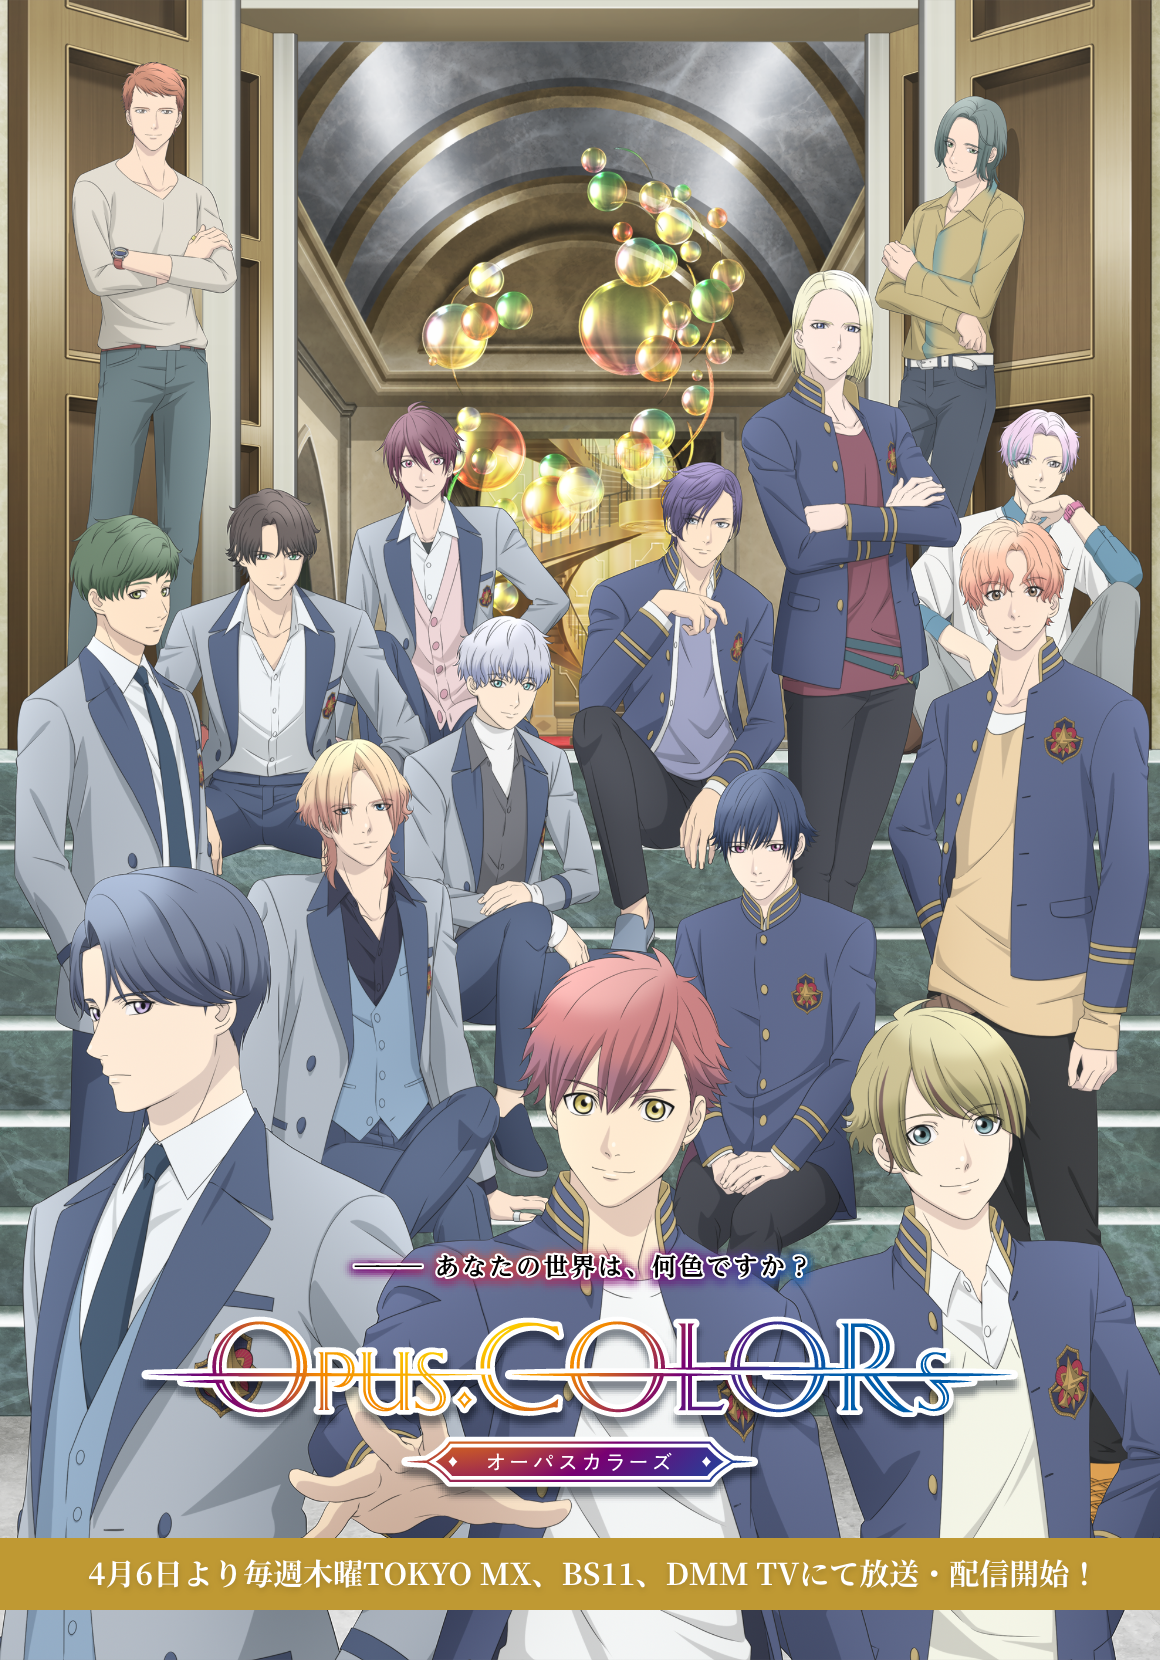 TVアニメ「Opus.COLORs」公式サイト―あなたの世界は、何色ですか？